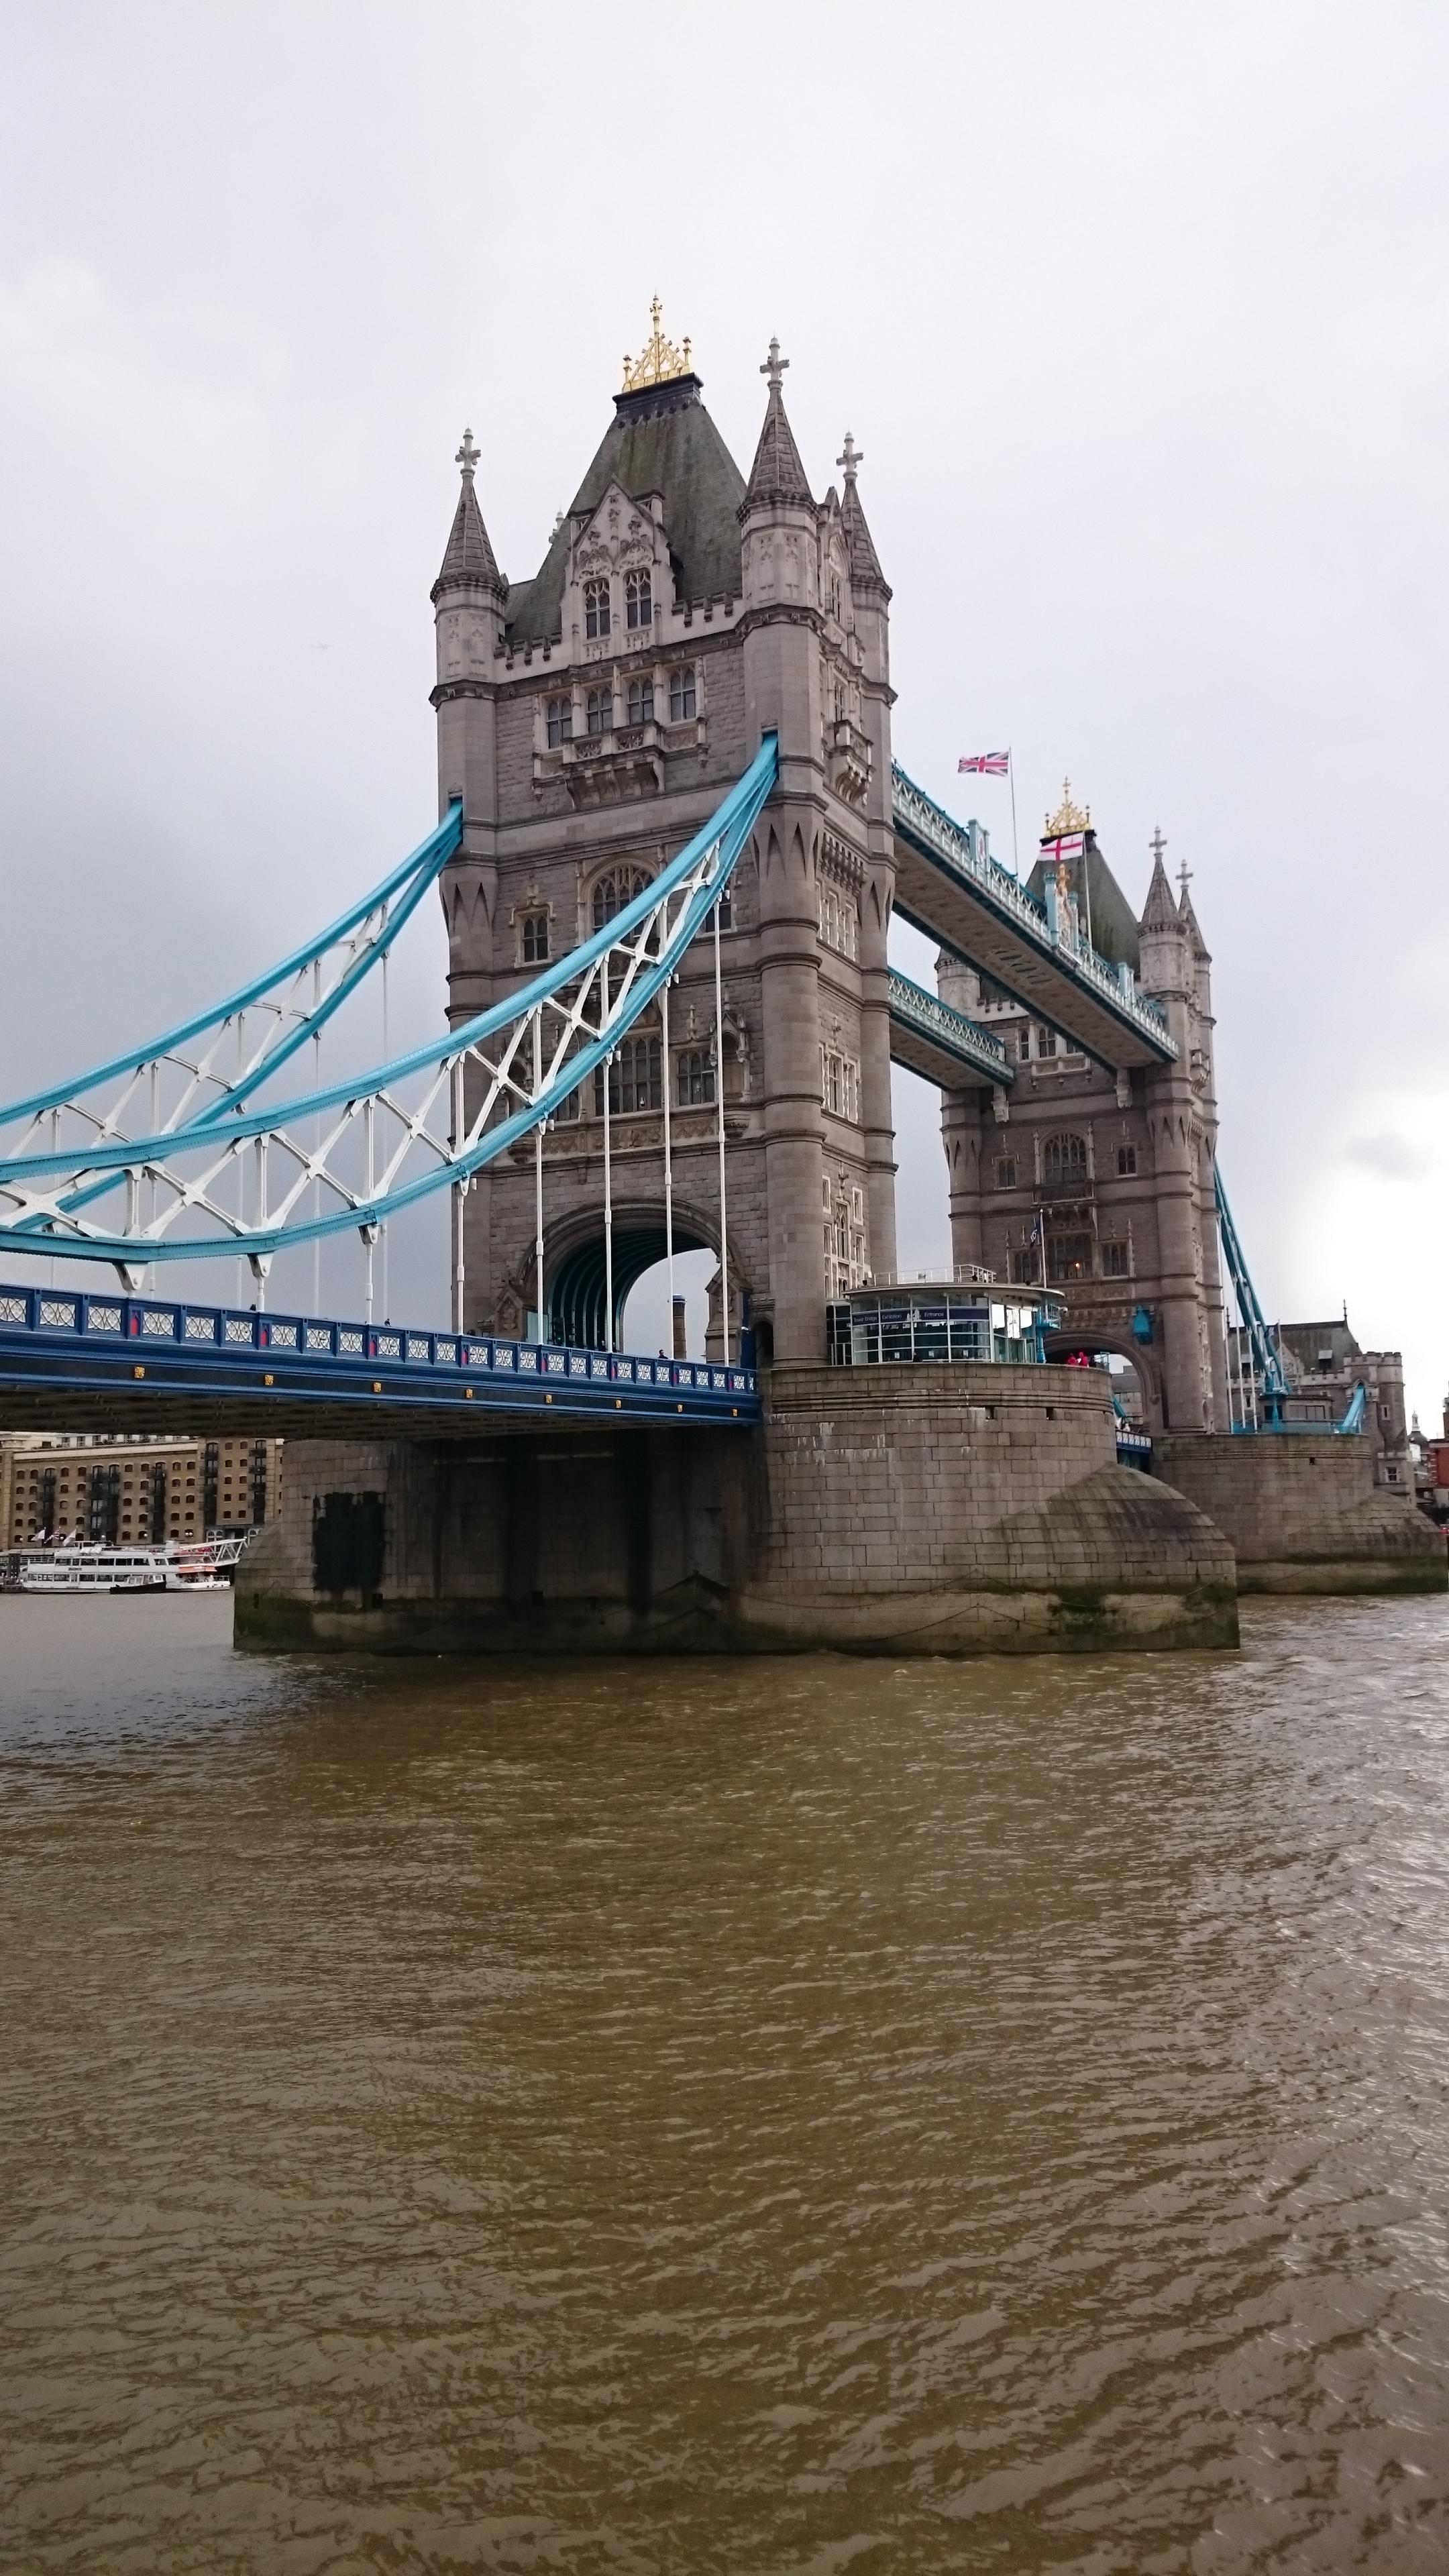 dsc 0691 - Una visita al Tower Bridge en Londres